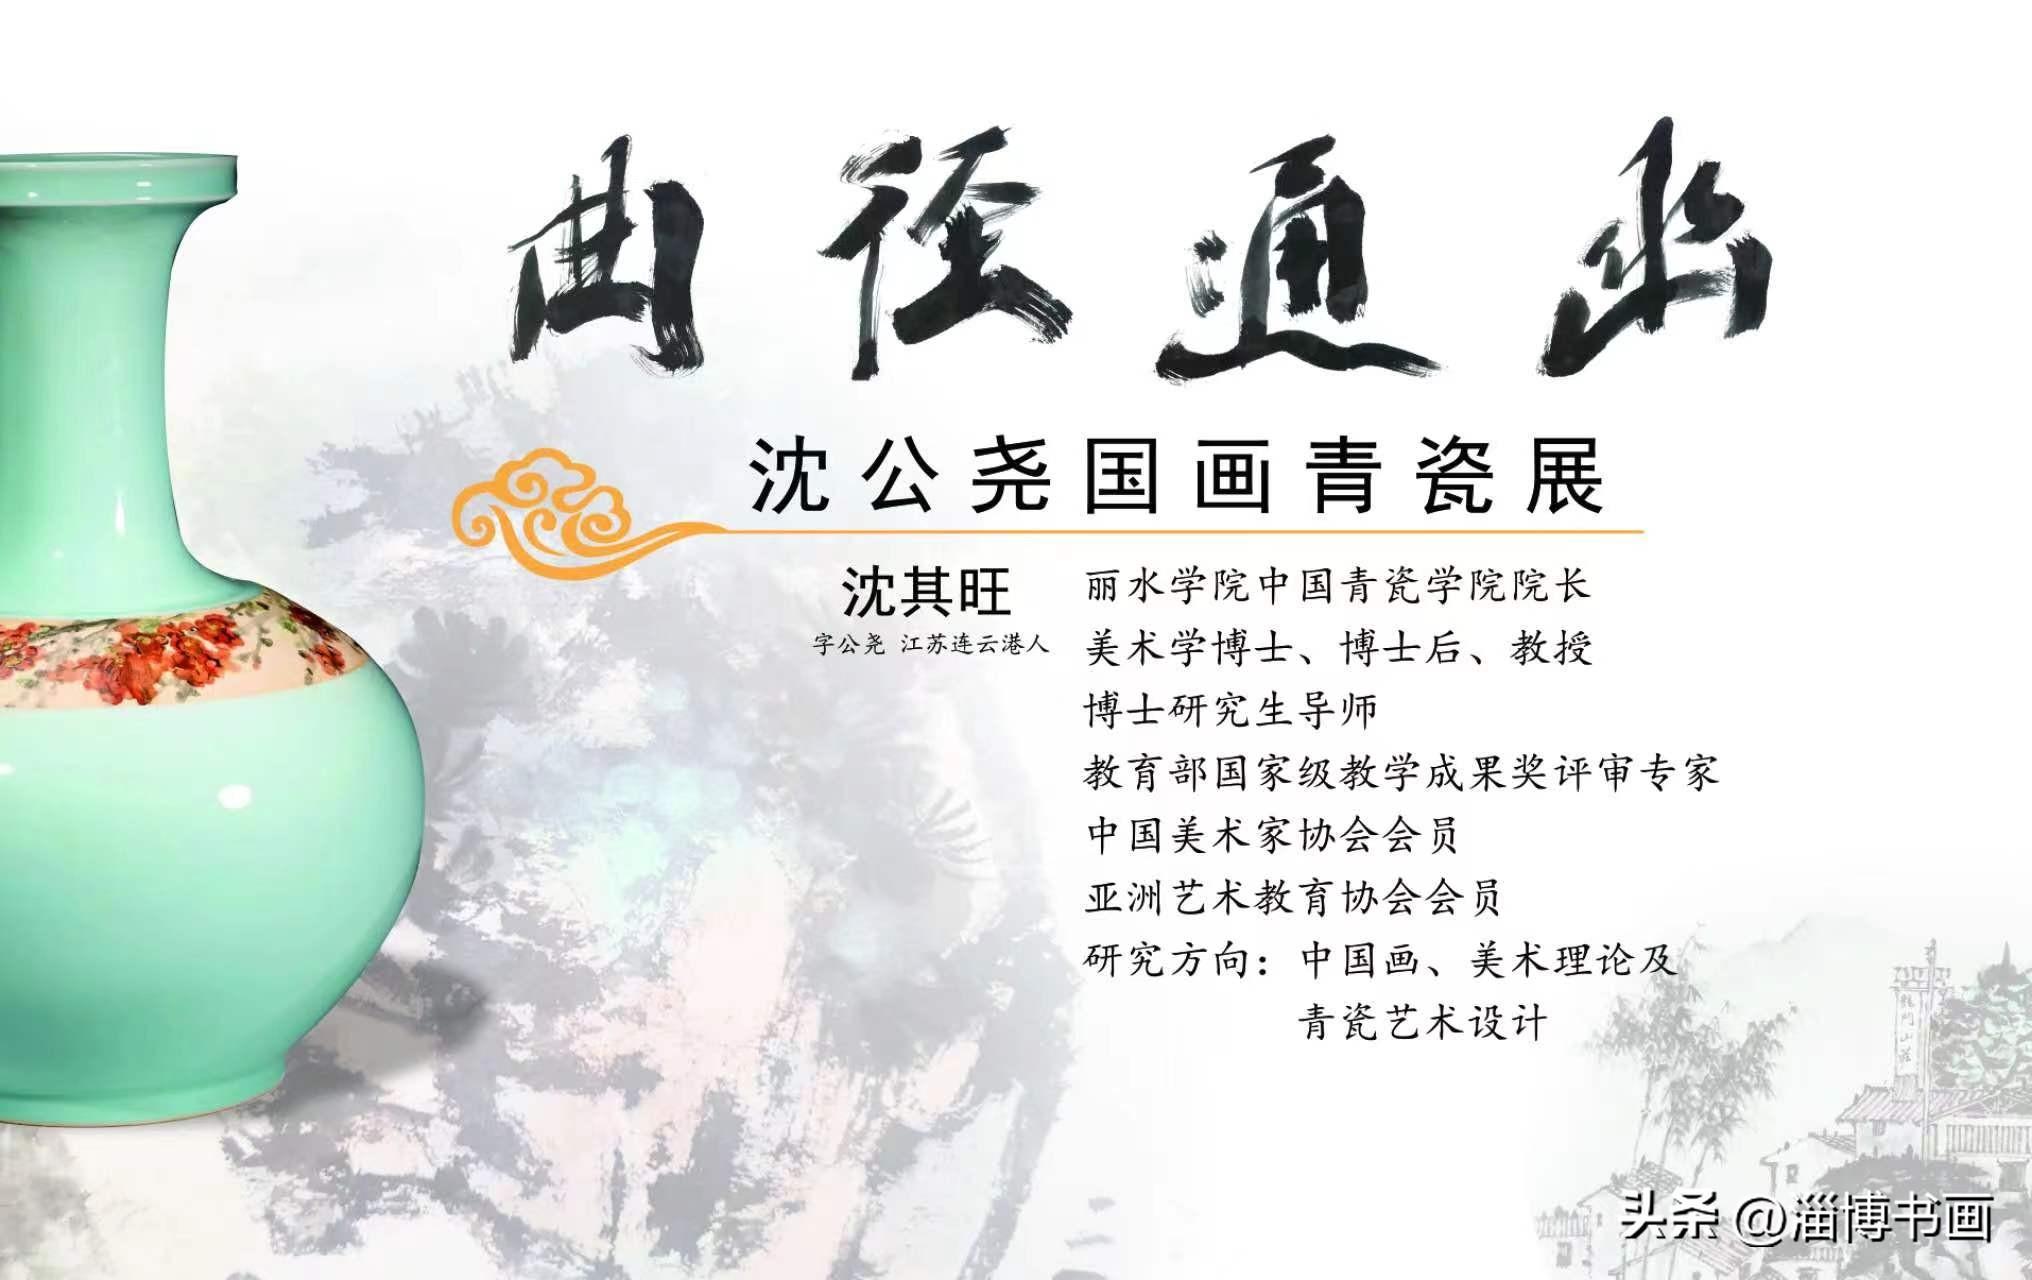 曲径通幽——沈公尧国画青瓷展，5月1日在淄博·大铁像艺术馆开幕